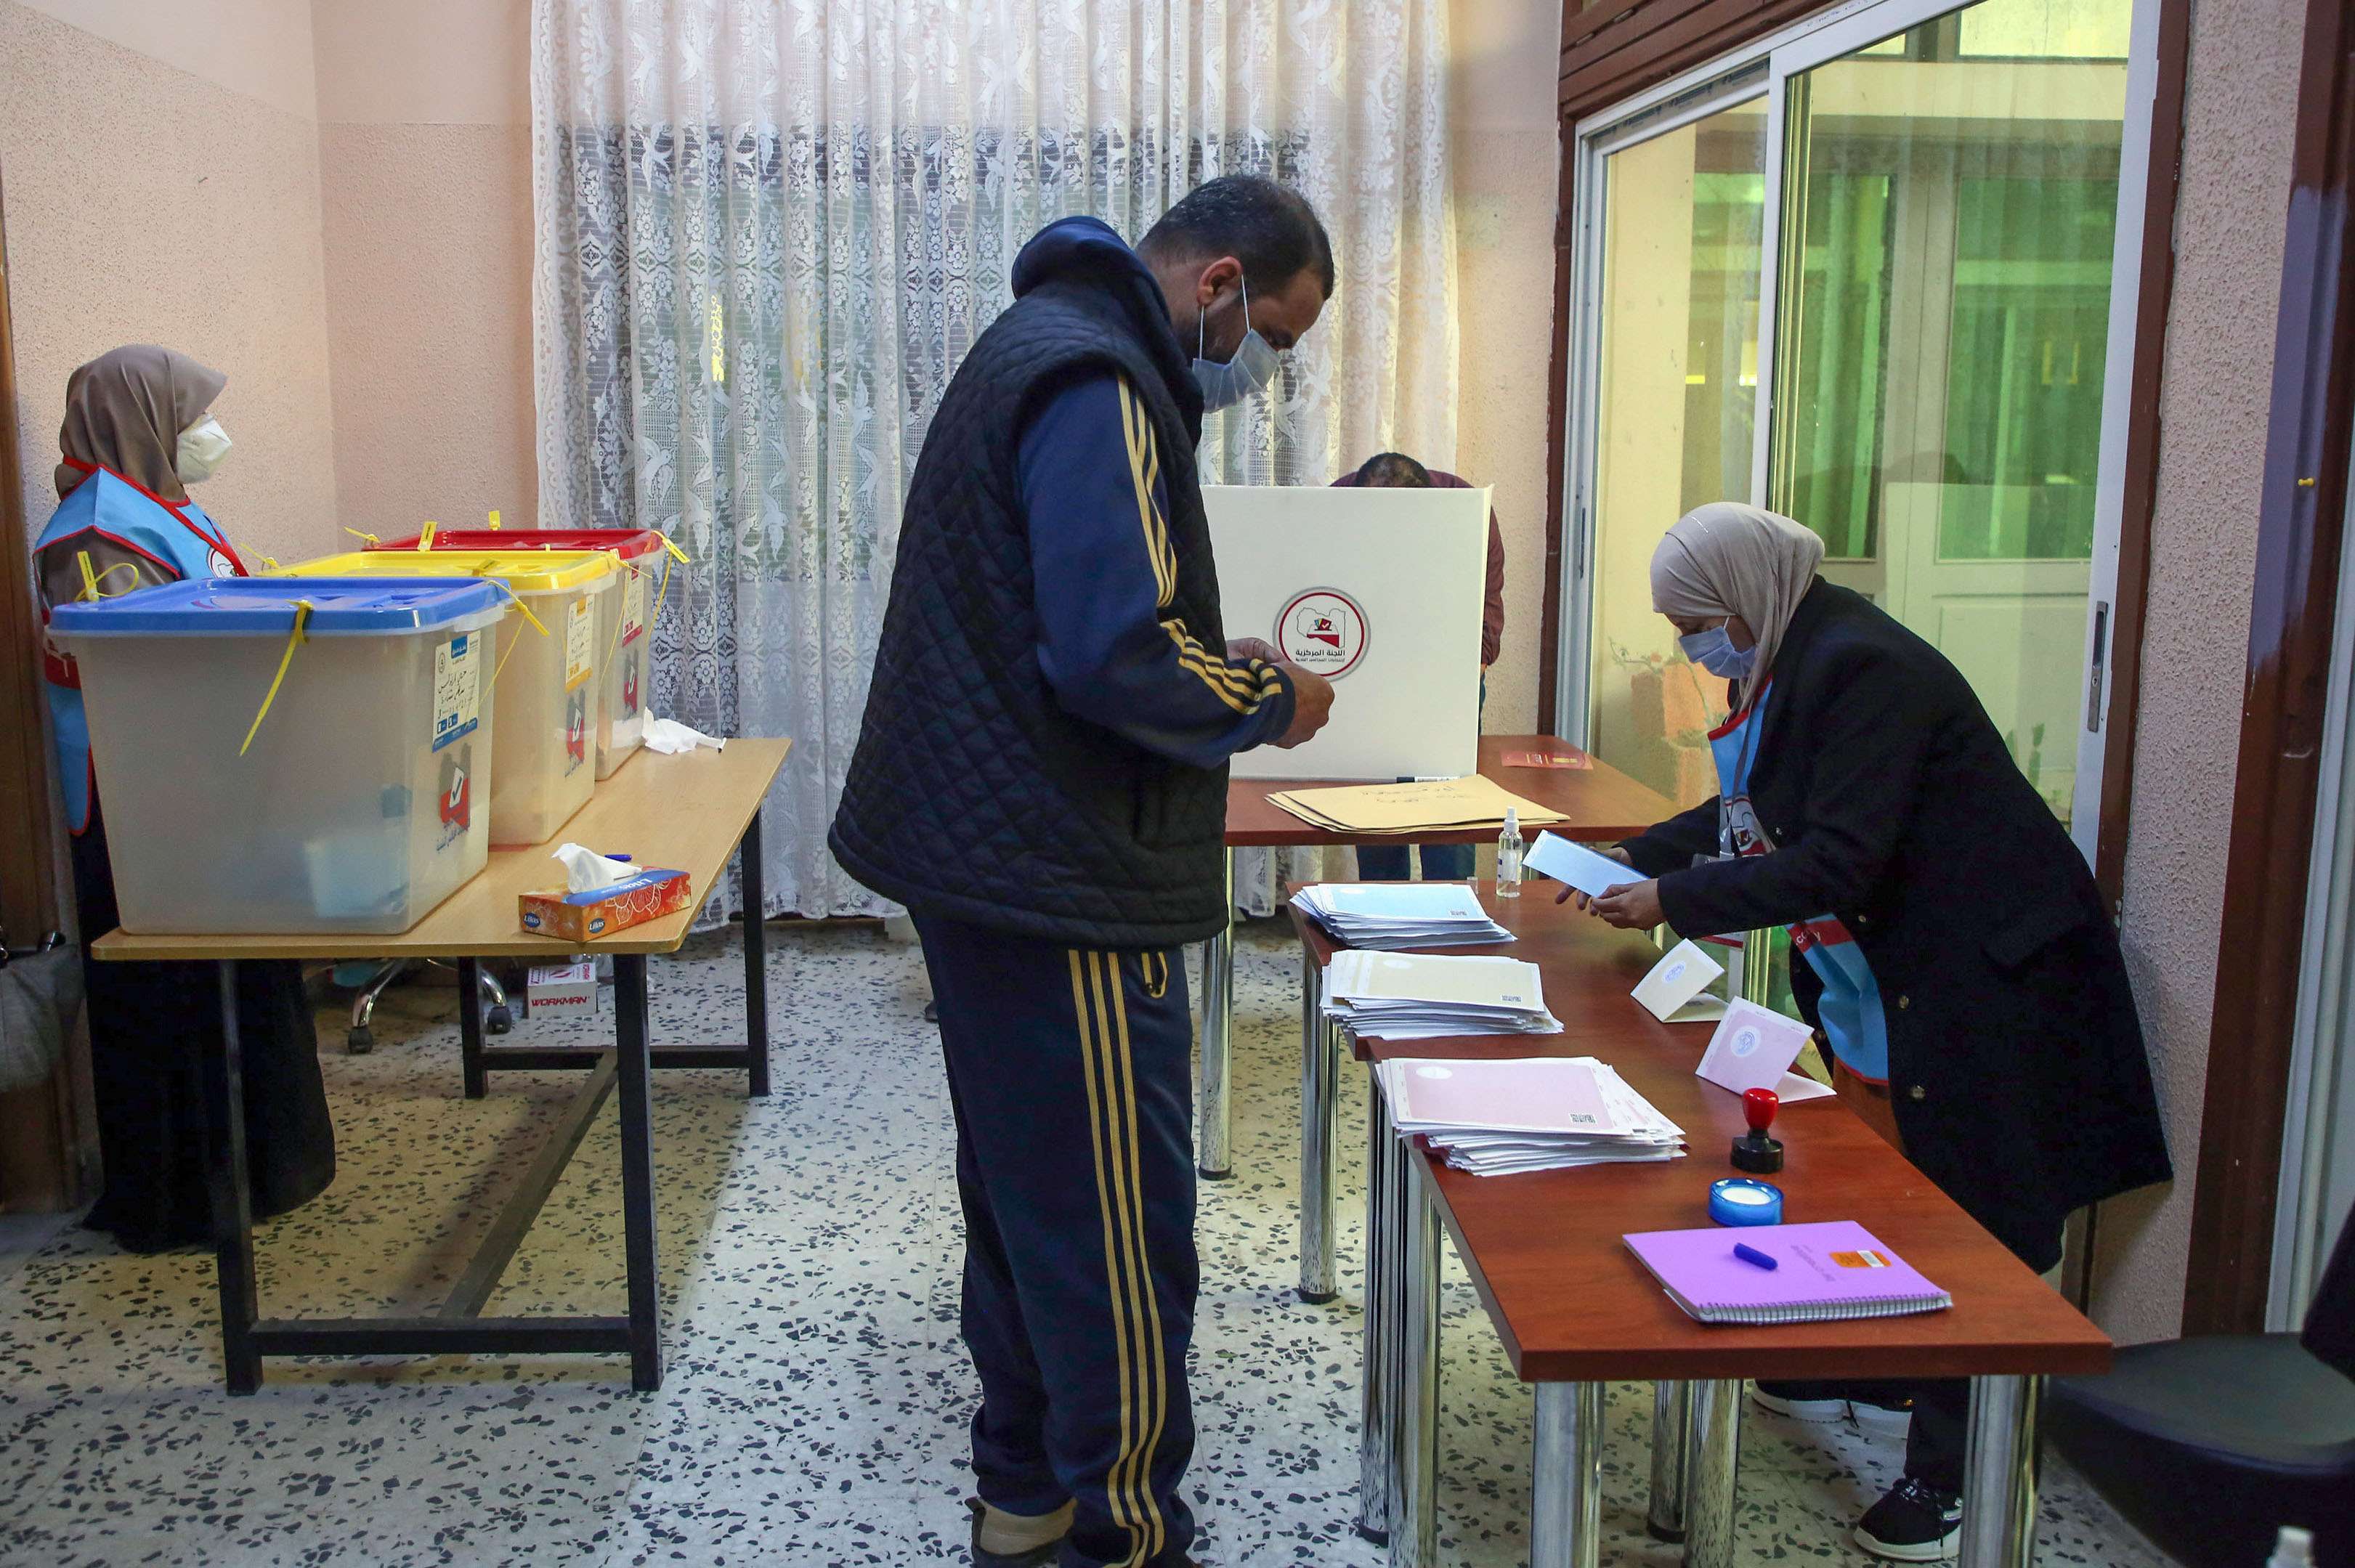 الانتخابات البلدية اختبار نسبي لقدرة ليبيا على تنظيم انتخابات عامة تتطلب استعدادا أكبر